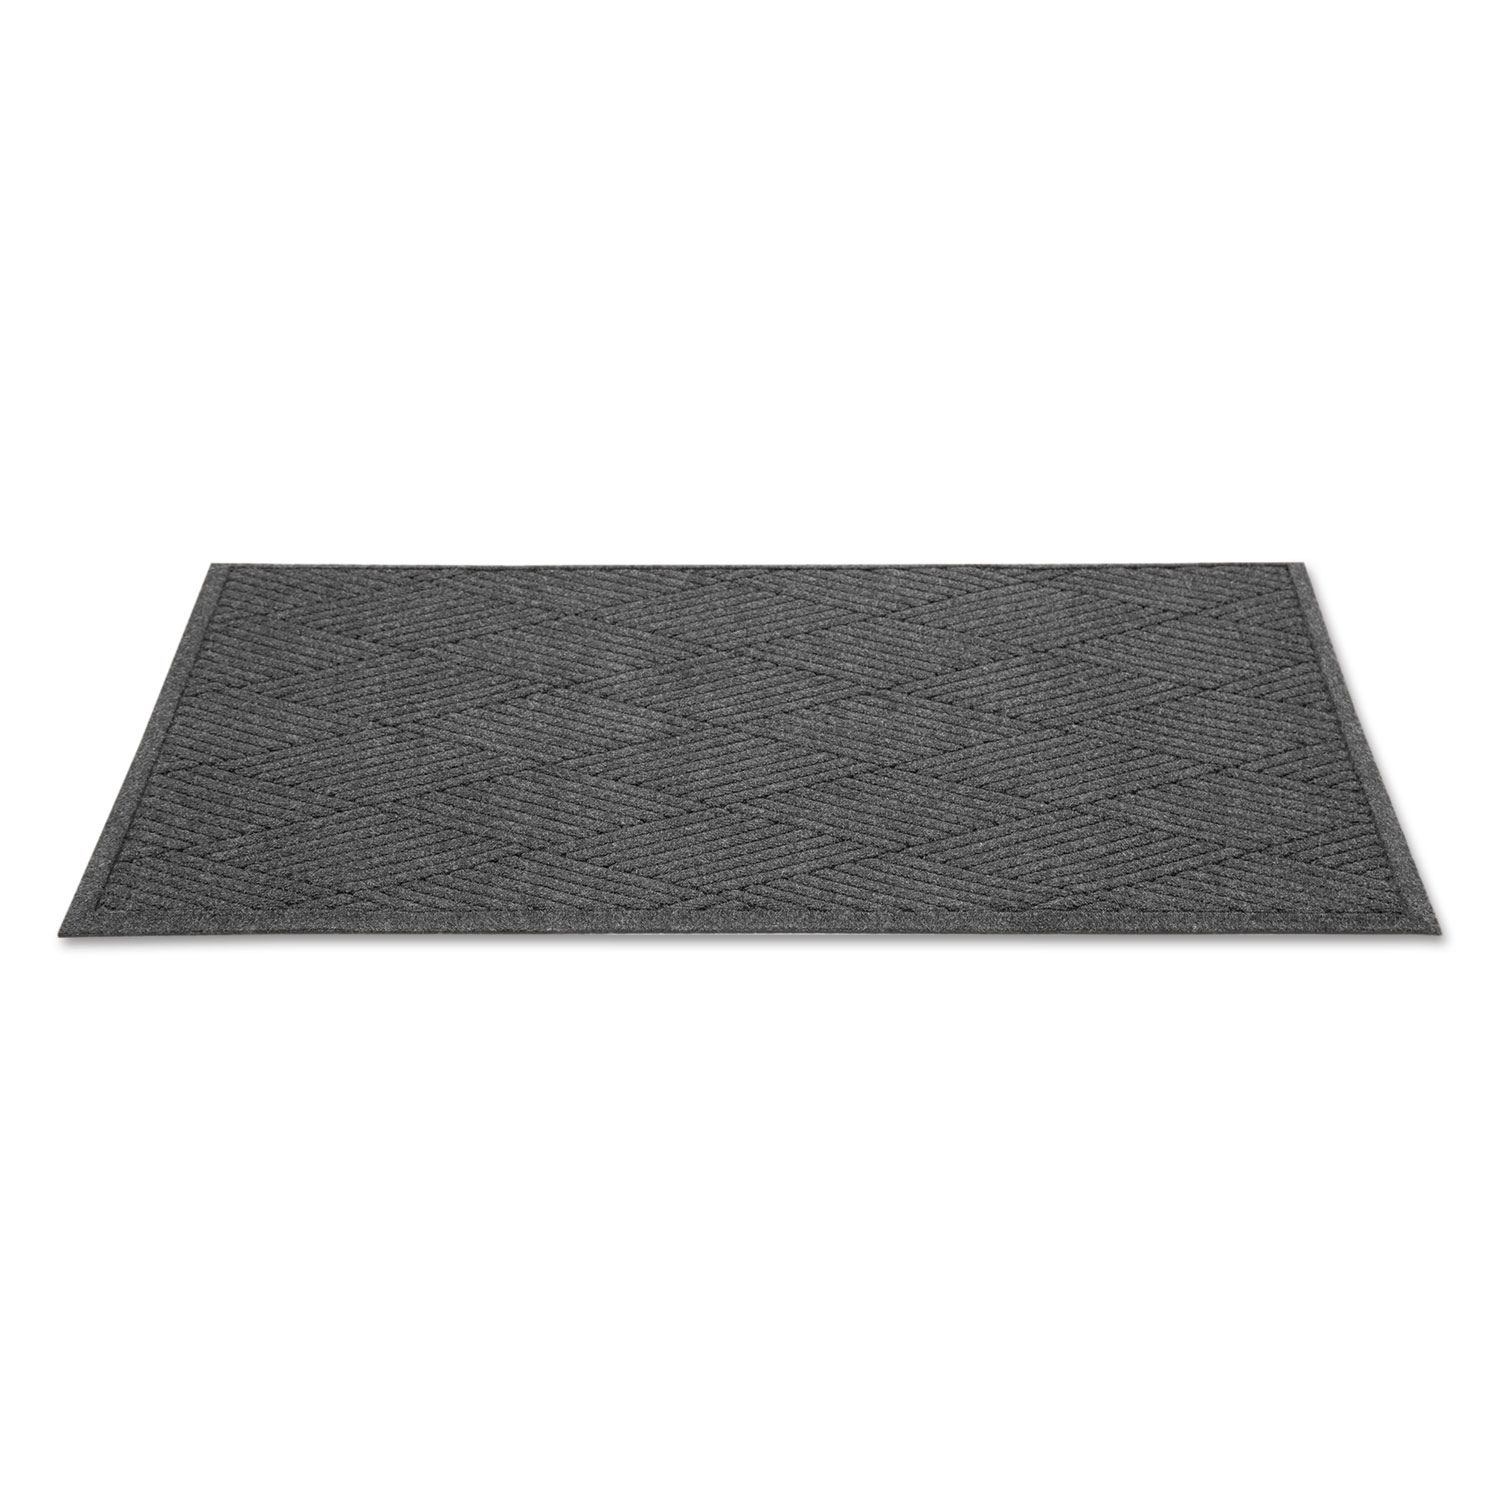  Guardian EGDFB031004 EcoGuard Diamond Floor Mat, Rectangular, 36 x 120, Charcoal (MLLEGDFB031004) 